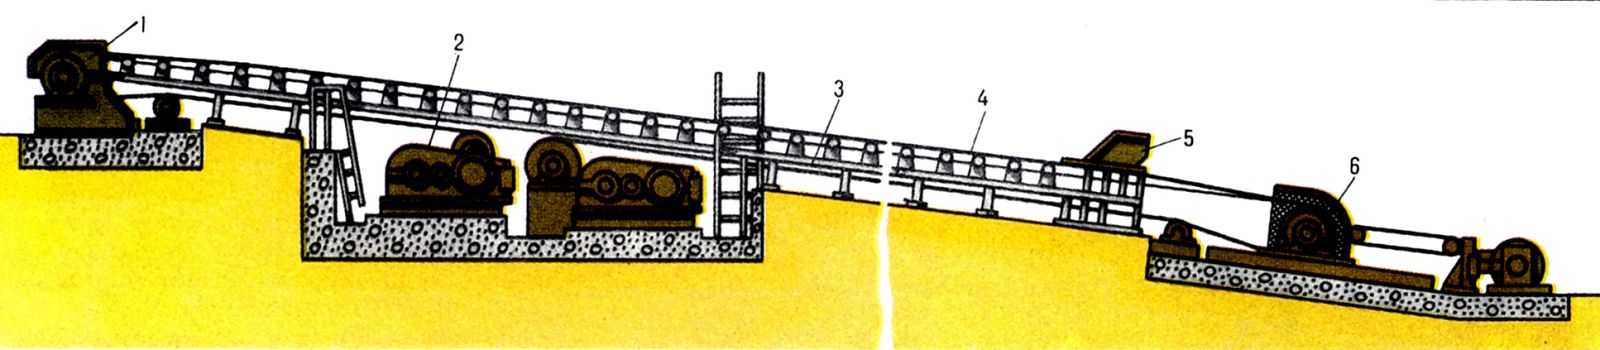  Рис. 1. Схема наклонного стационарного ленточного конвейера: 1 - разгрузочная головка; 2 - привод; 3 - конвейерный став c роликоопорами; 4 - лента; 5 - загрузочное устройство; 6 - натяжное устройство